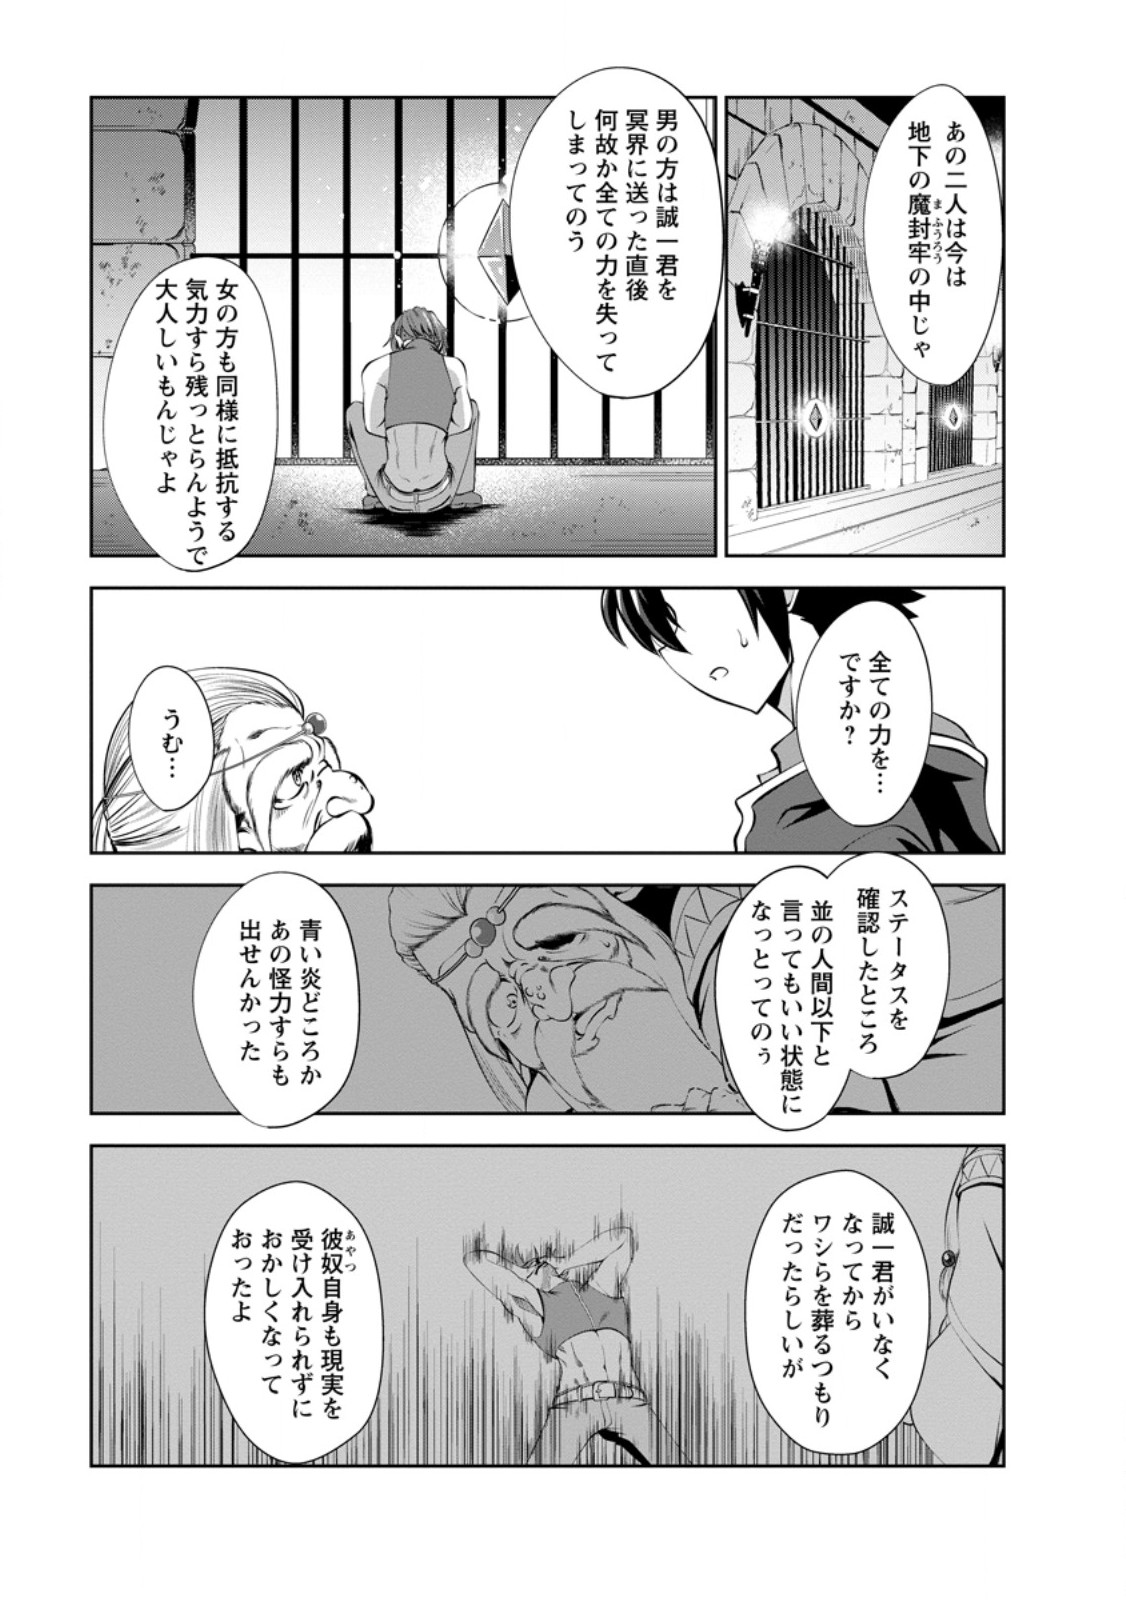 Shinka no Mi ~Shiranai Uchi ni Kachigumi Jinsei~ - Chapter 48.2 - Page 1